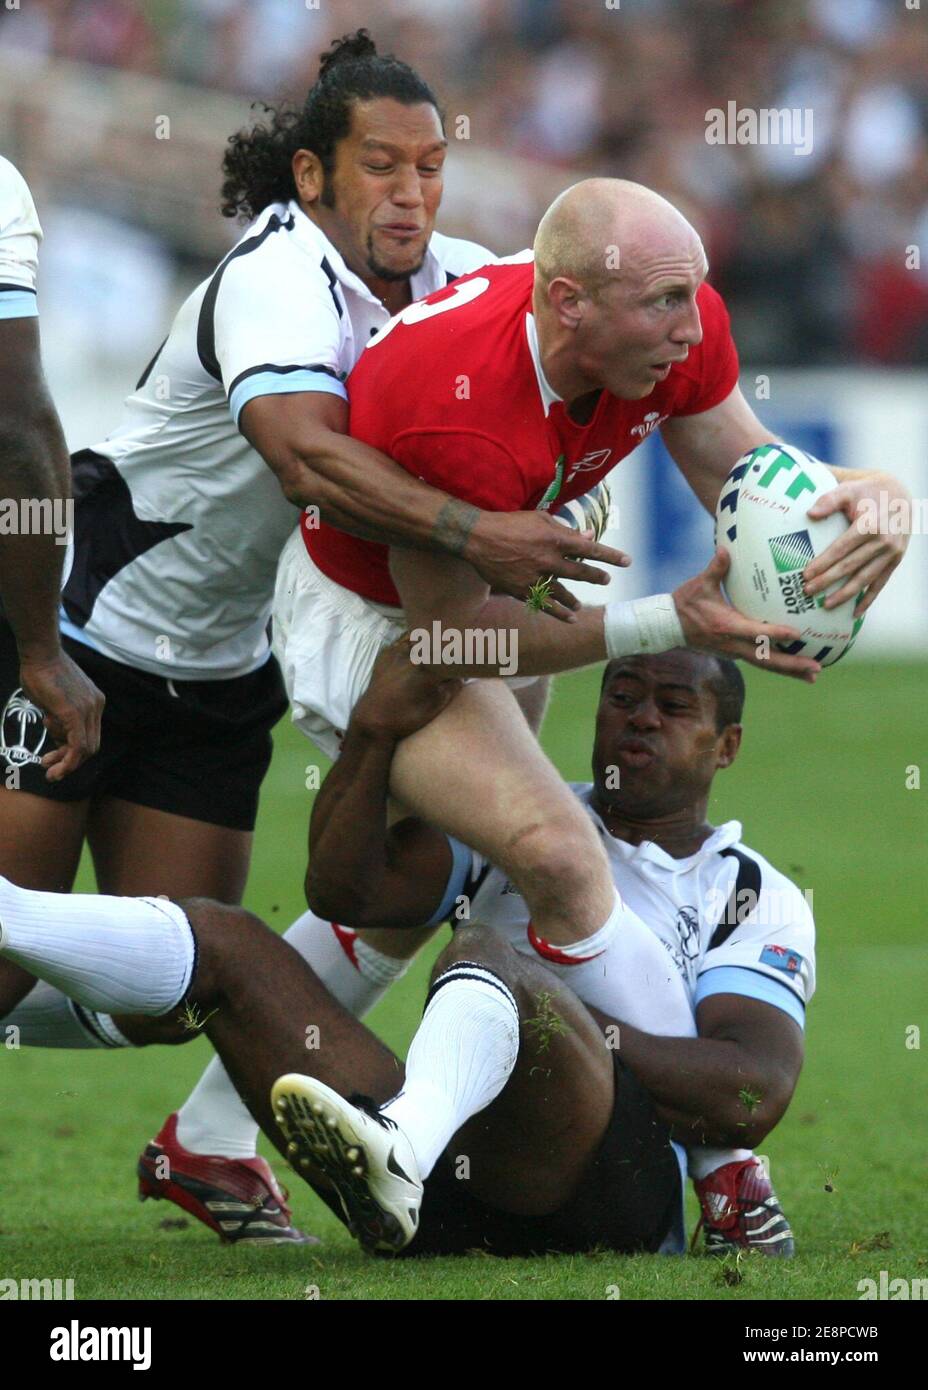 Durante la Coppa del mondo IRB Rugby, pool B, Galles vs Figi allo stadio Beaujoire di Nantes, Francia, il 29 settembre 2007. Foto di Medhi Taamallah/Cameleon/ABACAPRESS.COM Foto Stock